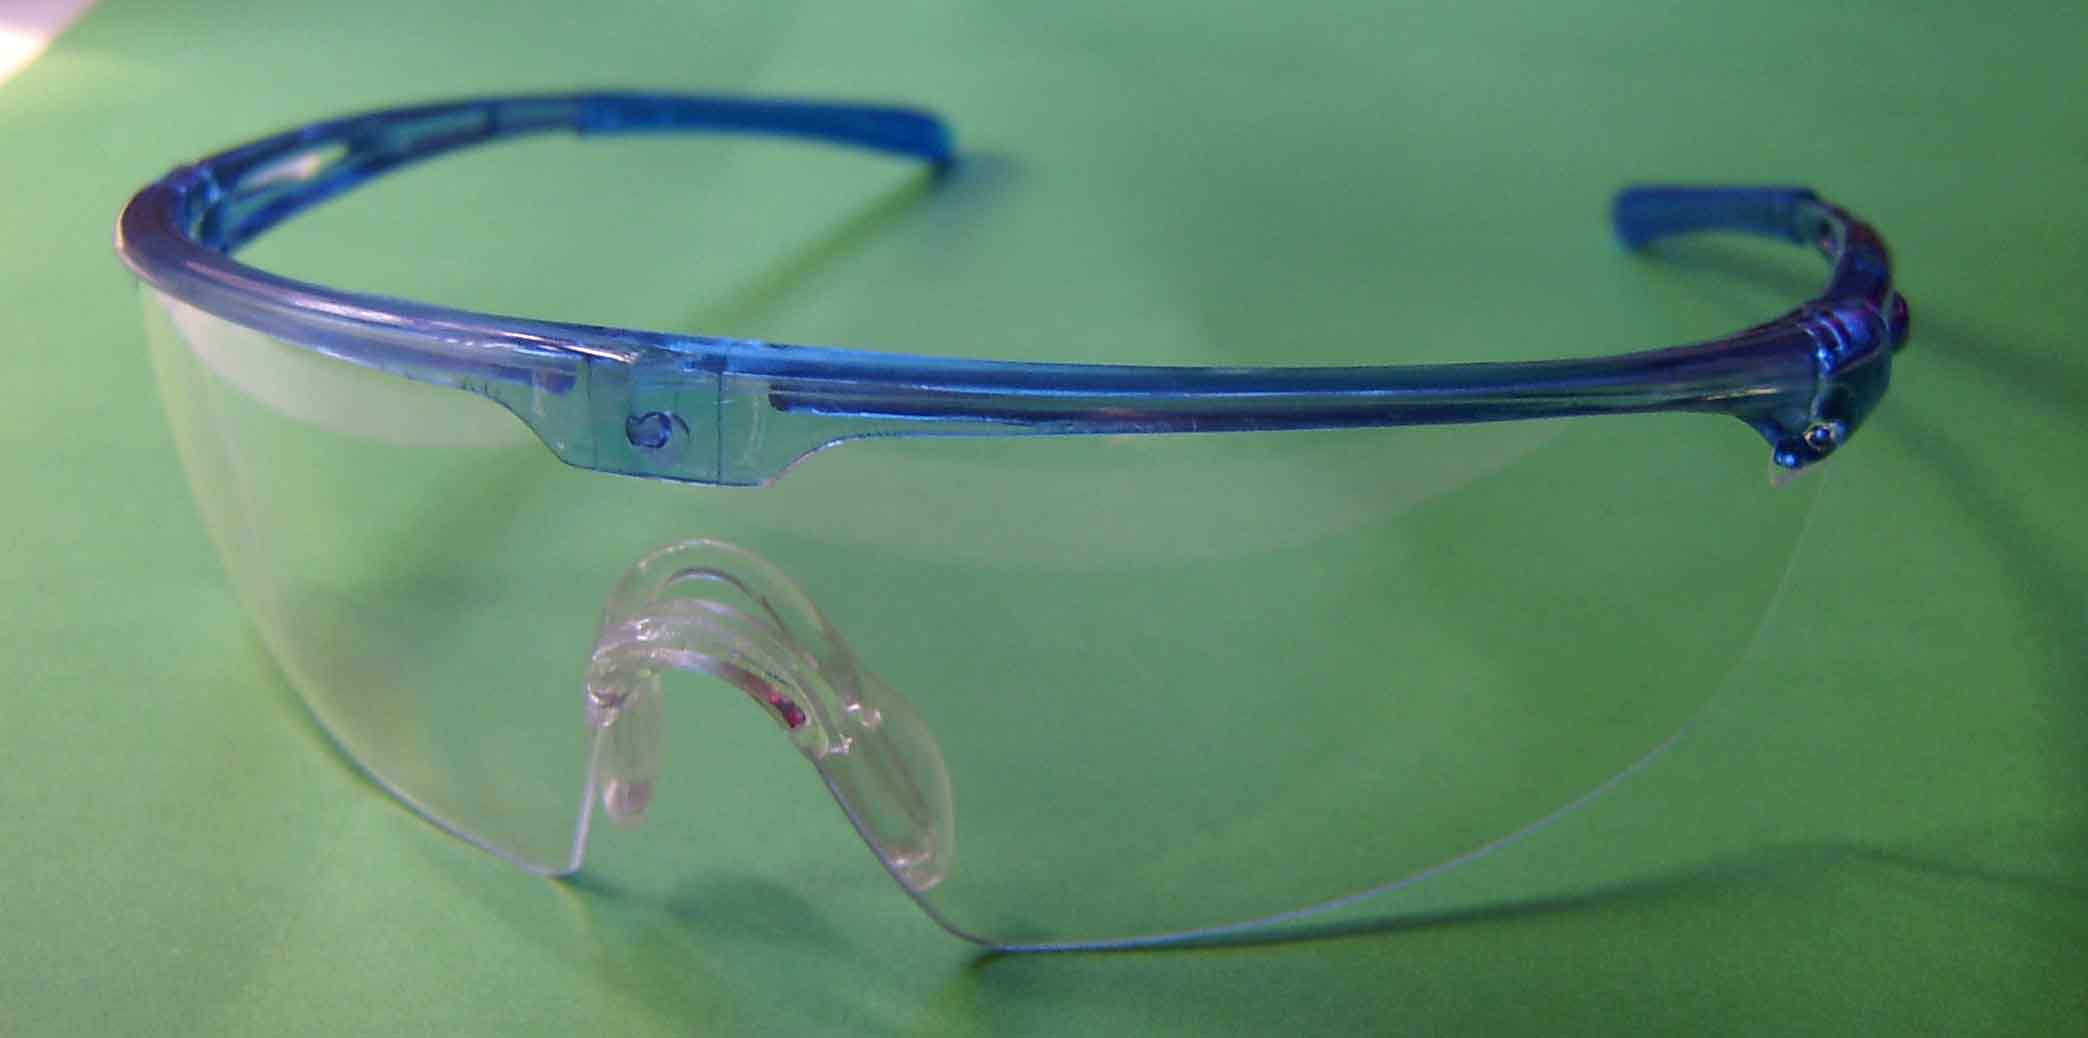  Safety Glasses (Lunettes de sécurité)